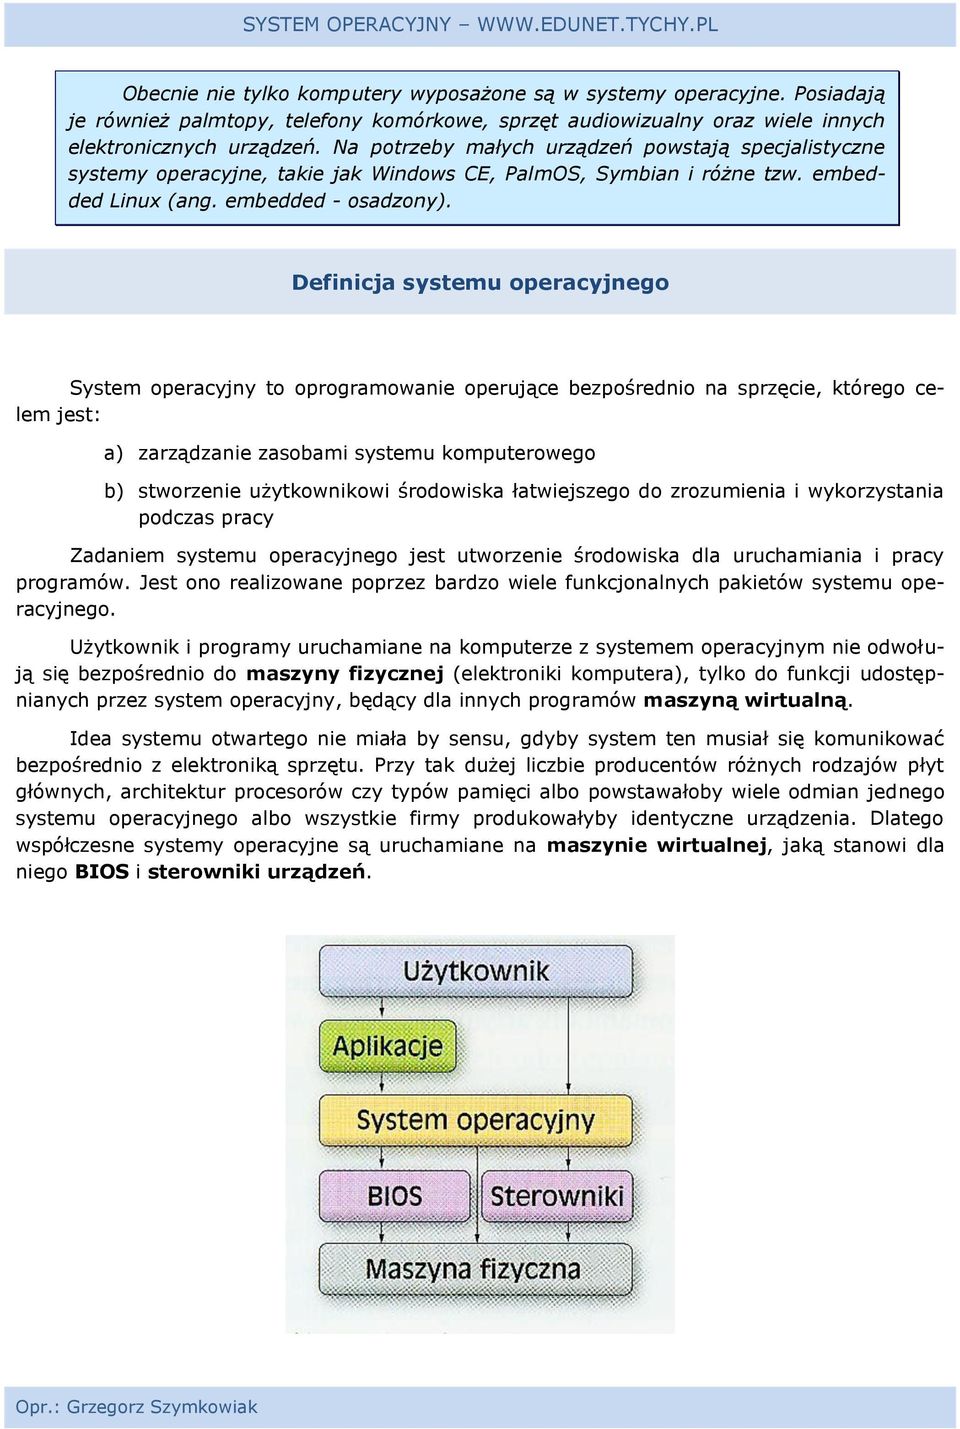 Definicja systemu operacyjnego System operacyjny to oprogramowanie operujące bezpośrednio na sprzęcie, którego celem jest: a) zarządzanie zasobami systemu komputerowego b) stworzenie użytkownikowi